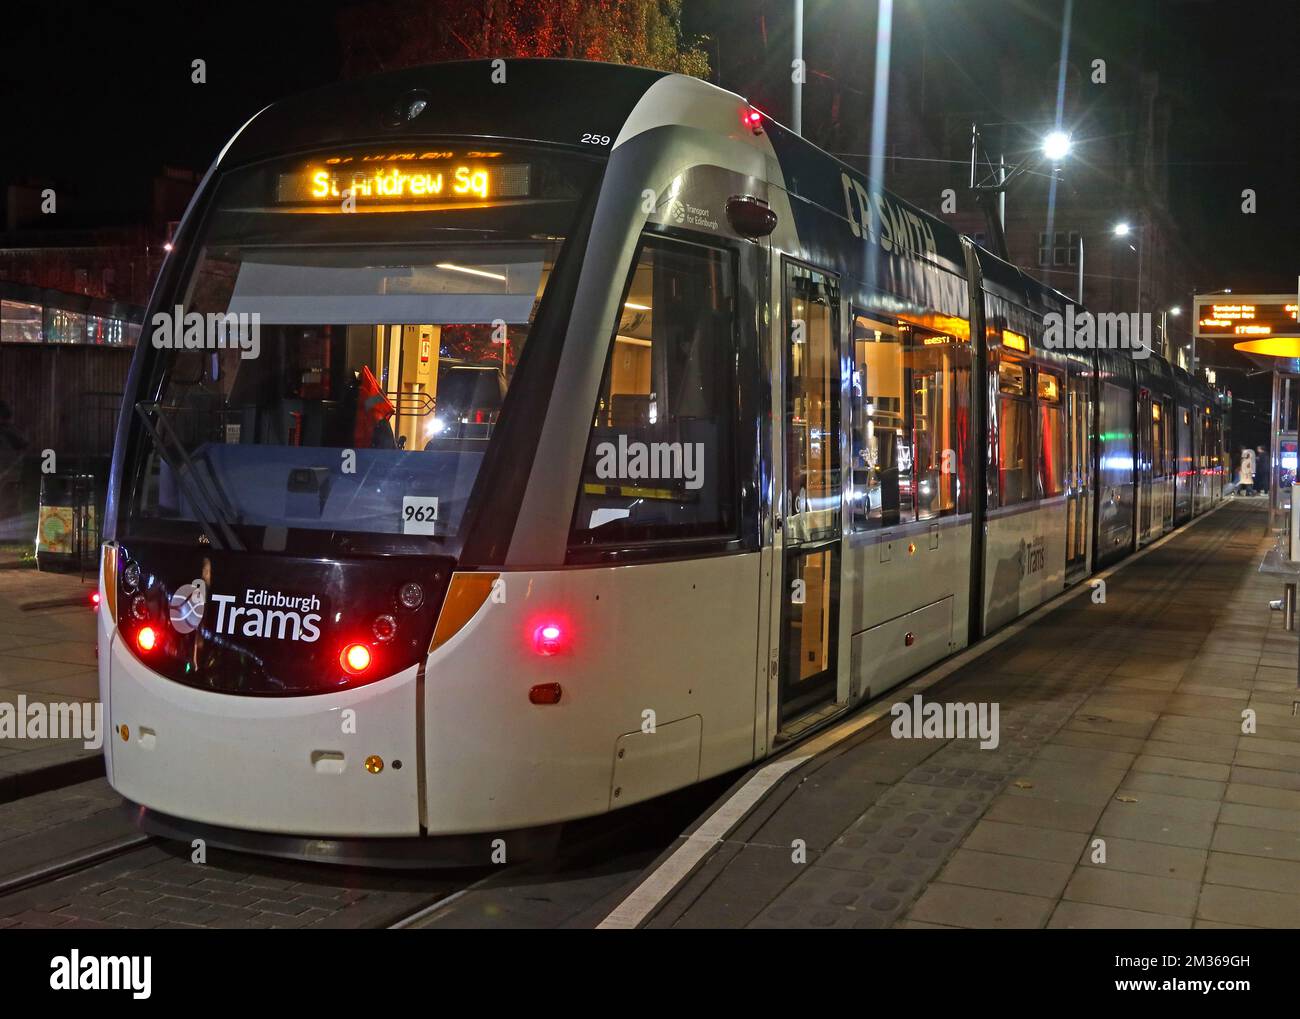 Arrêt de St Andrews Square, tramway de nuit, Édimbourg, dans les transports publics de Lothian, Écosse, Royaume-Uni Banque D'Images